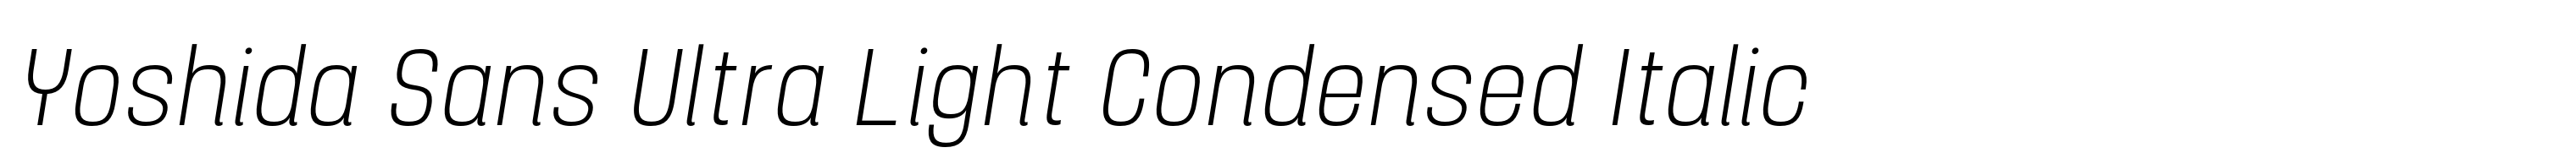 Yoshida Sans Ultra Light Condensed Italic